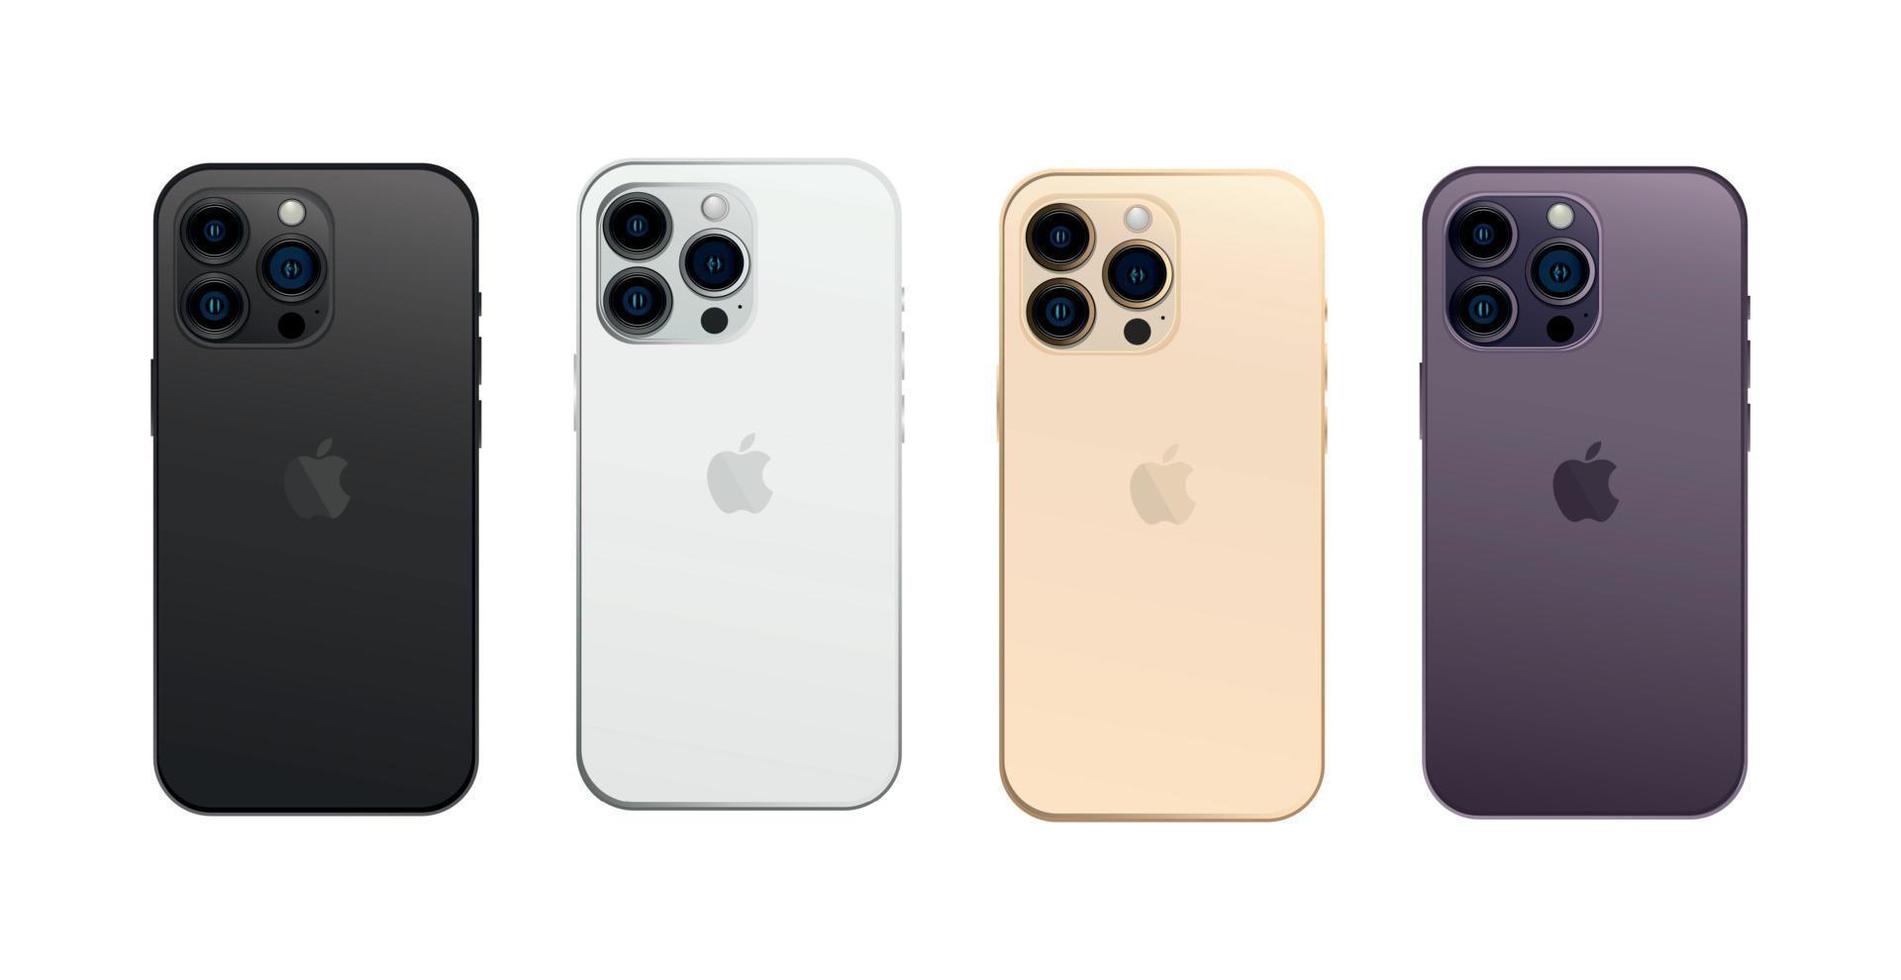 nuevo apple iphone 14 pro, gadget moderno para smartphones, juego de 4 piezas nuevos colores originales - vector